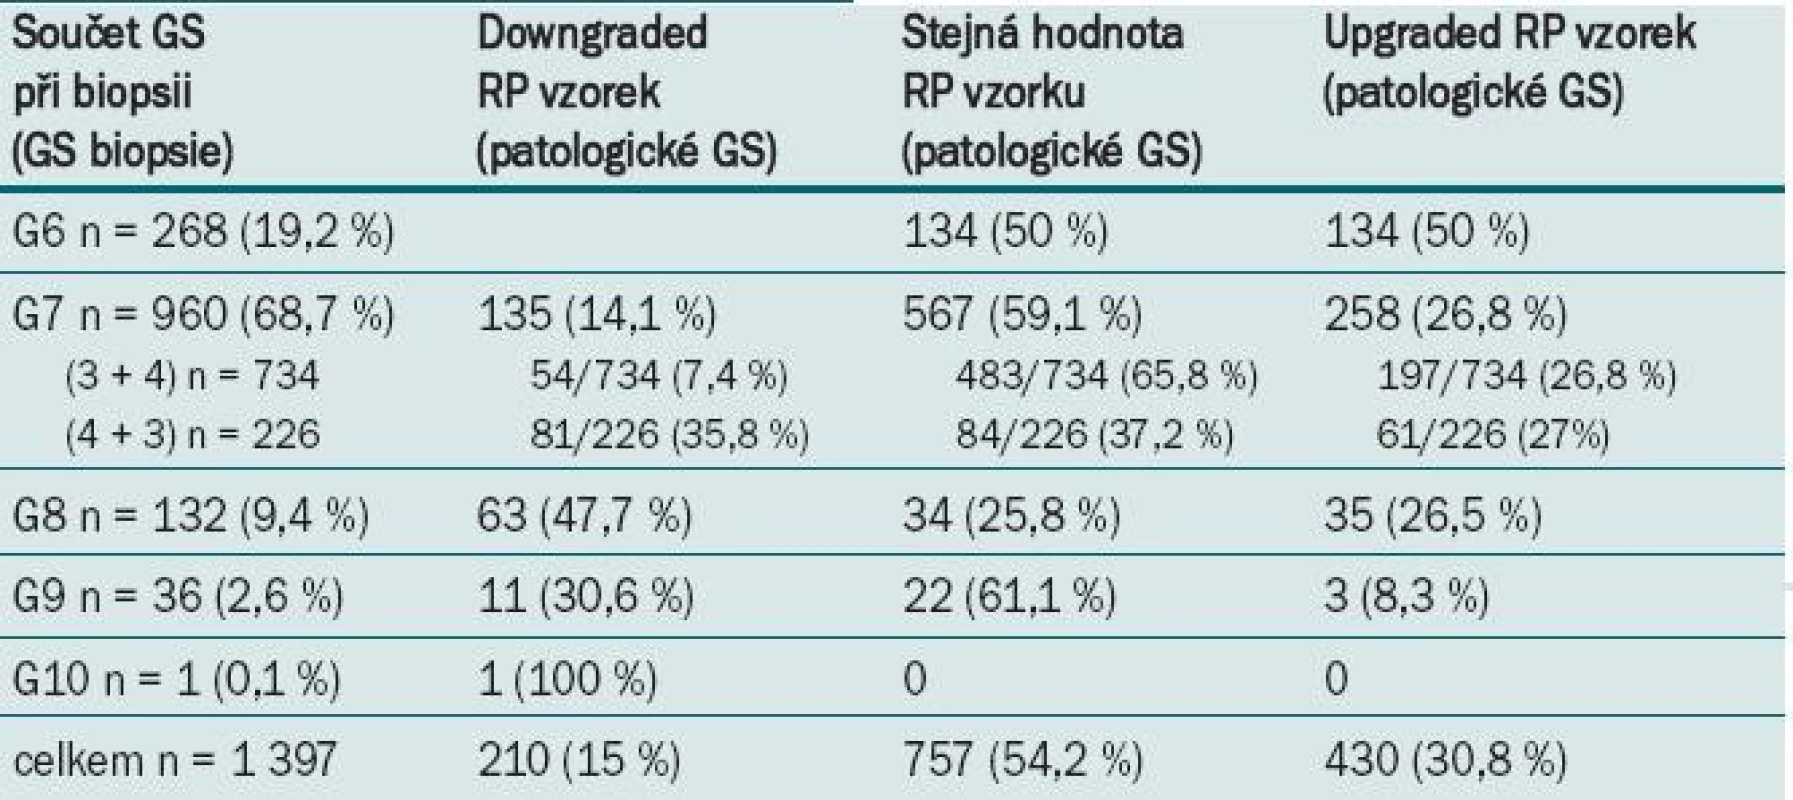 Výsledky srovnání GS biopsie a patologického GS.